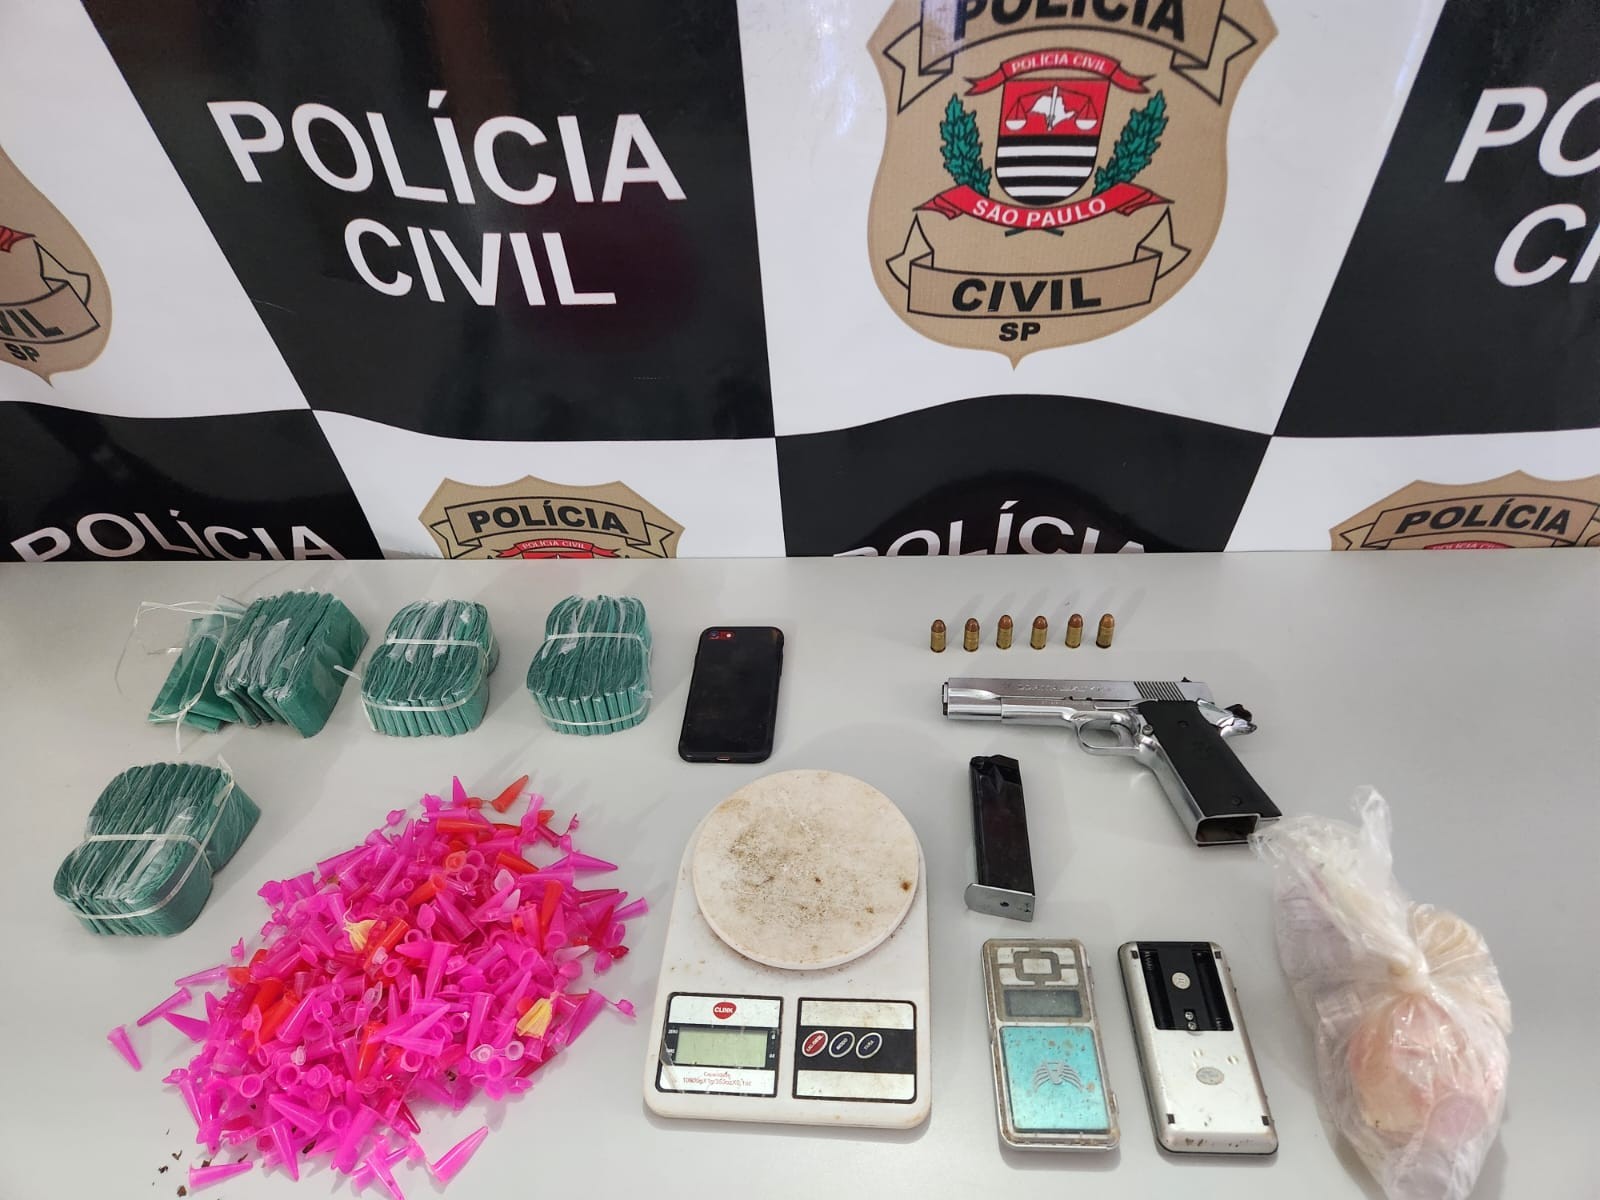 Homem é preso suspeito de posse de arma de uso restrito, tráfico e maus-tratos em São Miguel Arcanjo